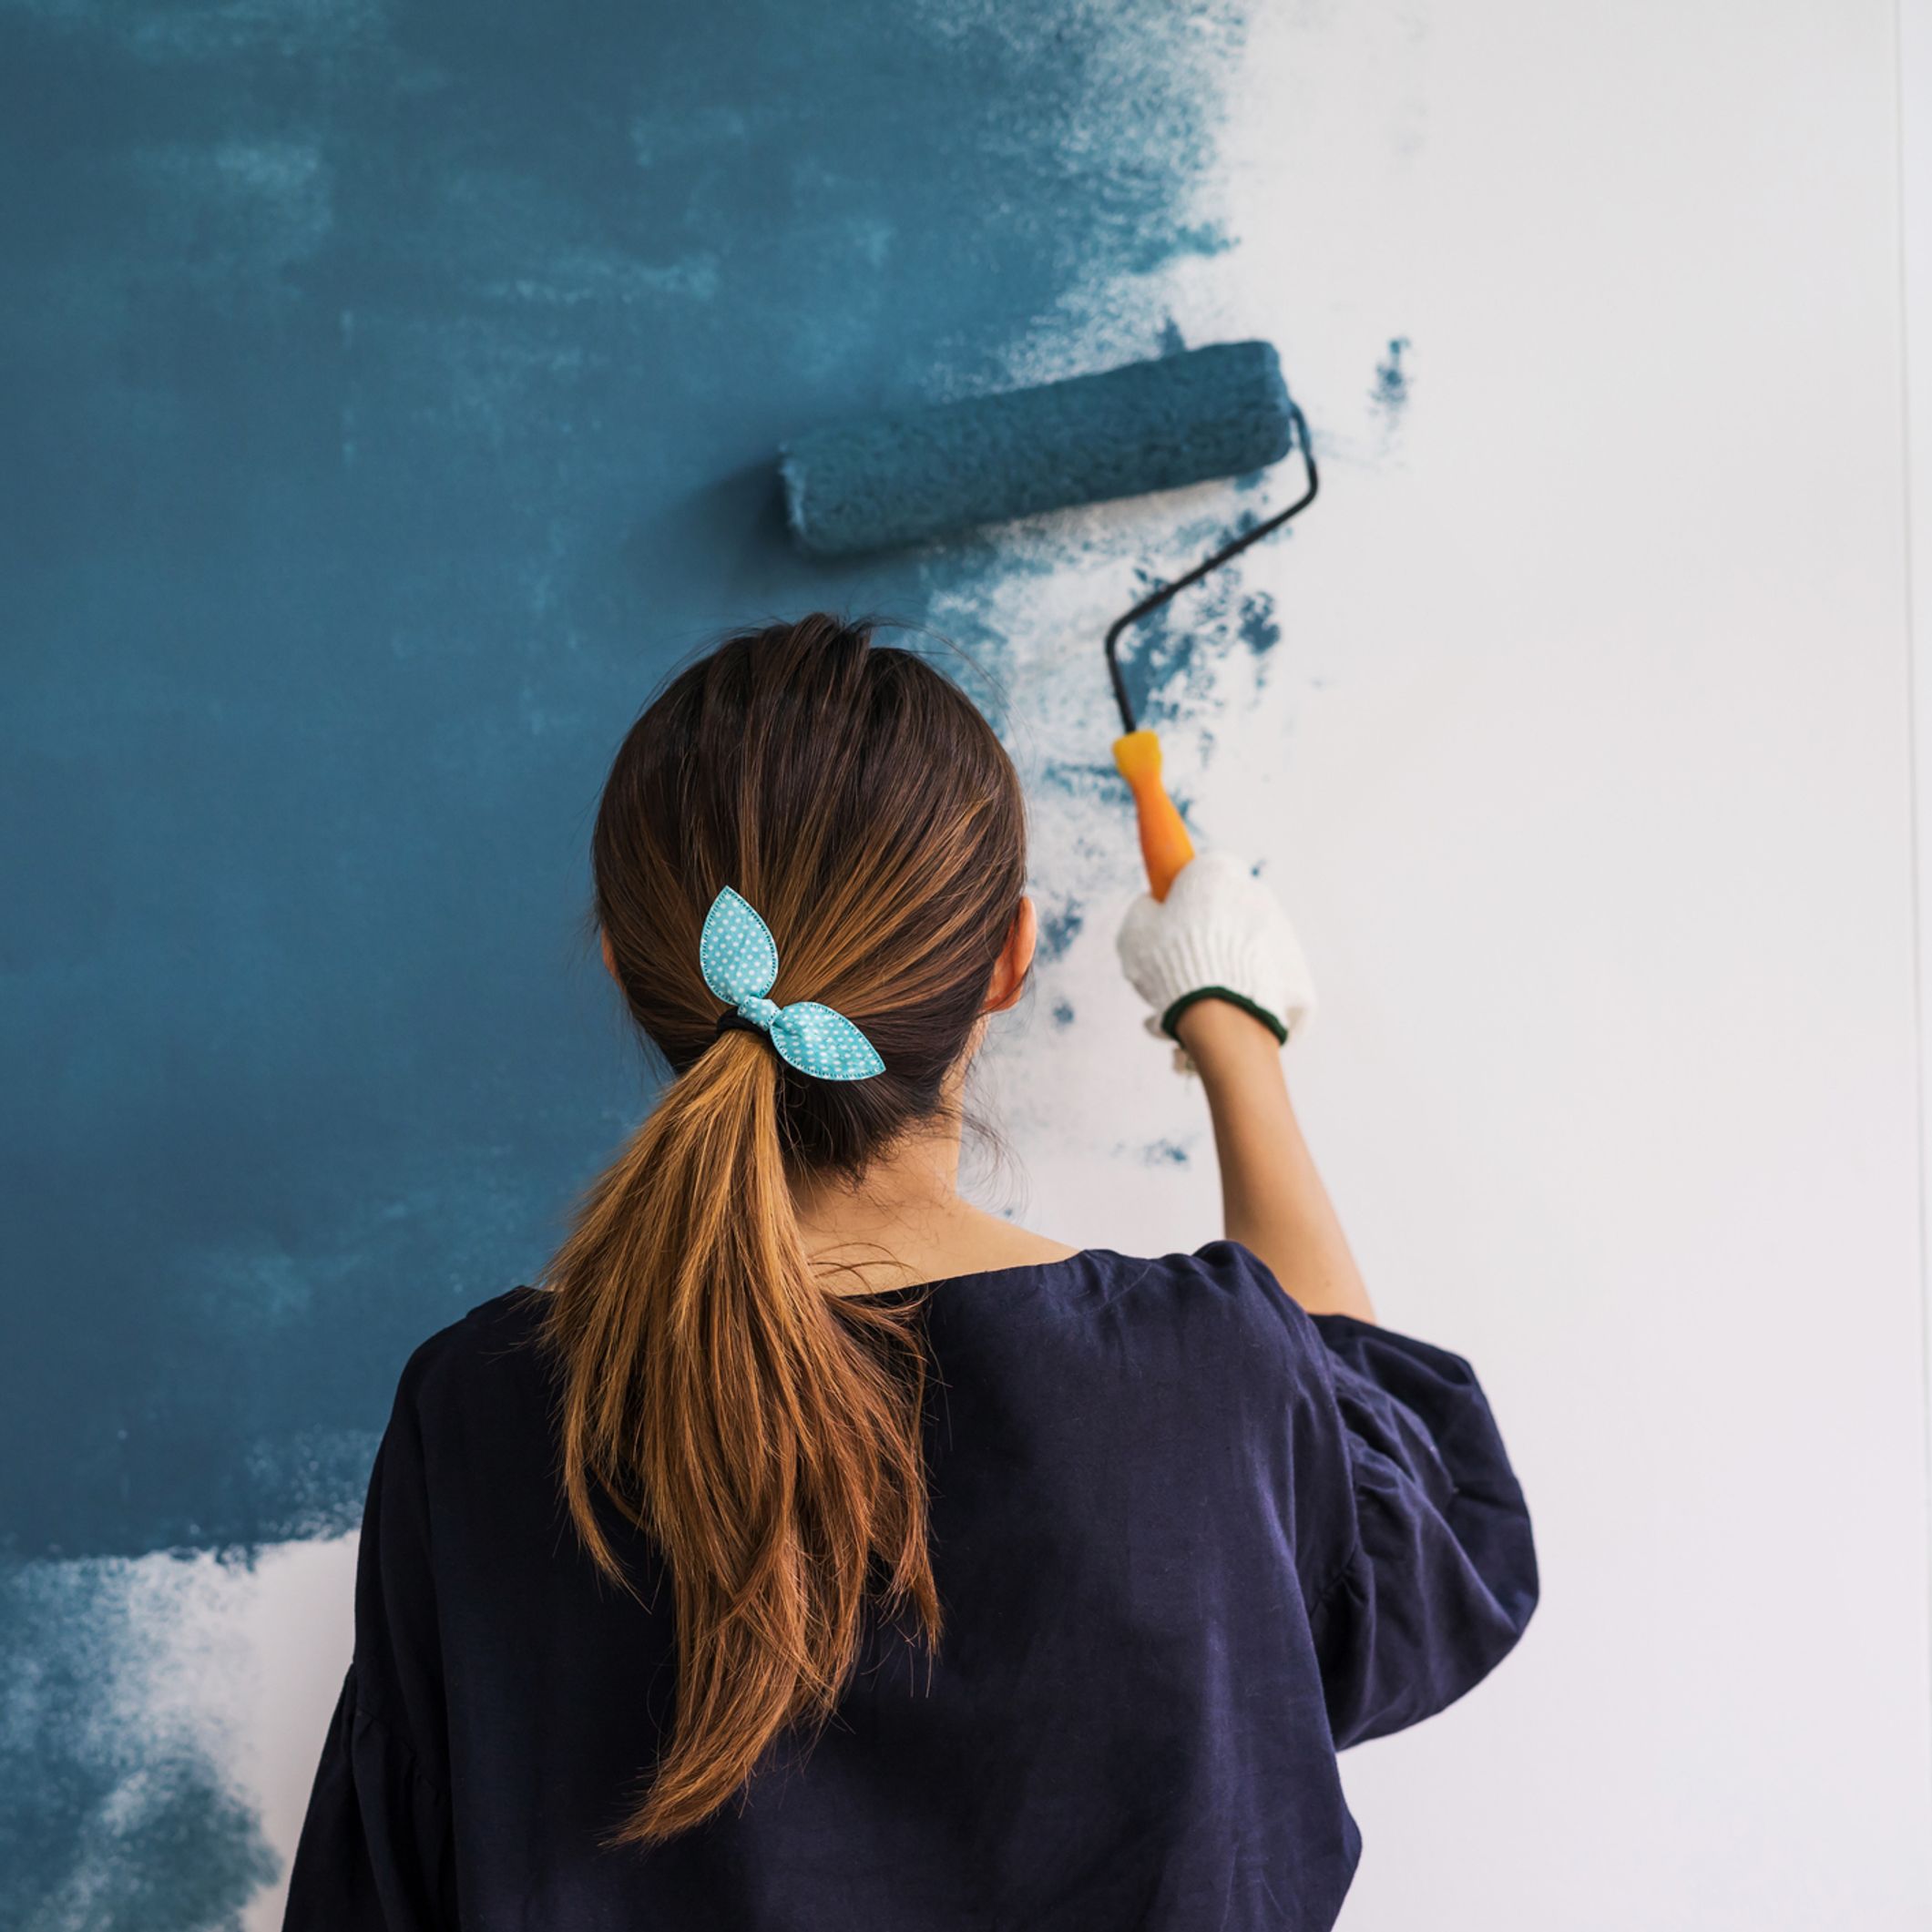 Une Femme Prépare De La Peinture Pour Peindre Les Murs De La Cuisine  Préparation Des Outils Et Des Peintures Pour La Peinture